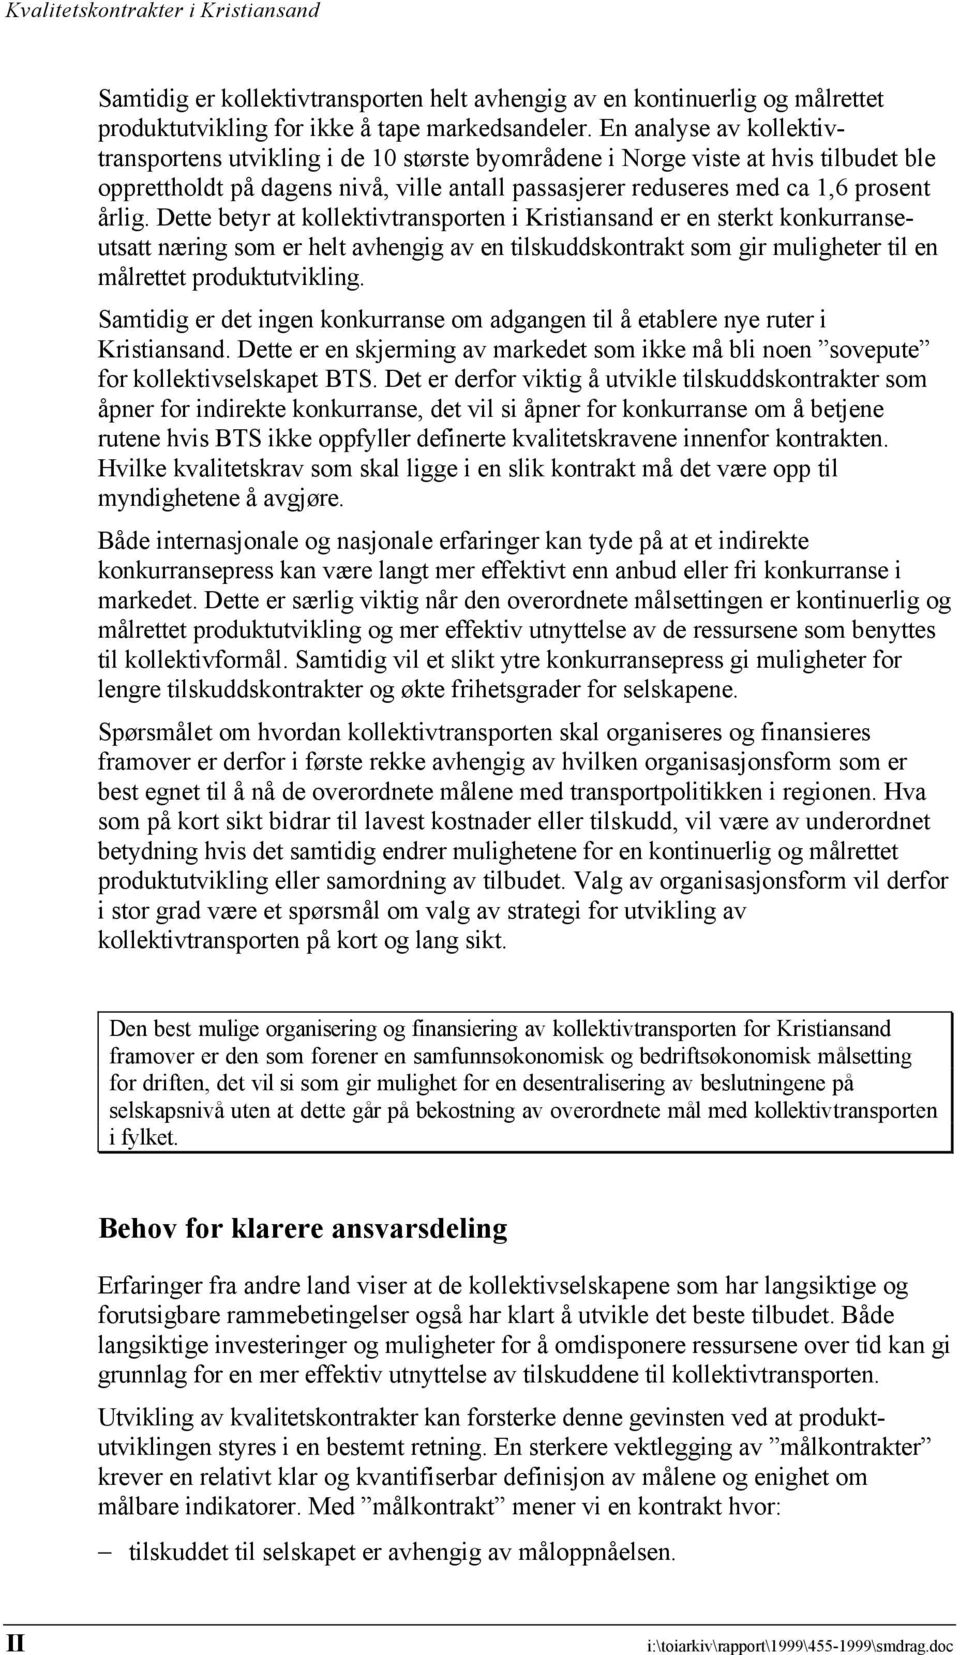 Dette betyr at kollektivtransporten i Kristiansand er en sterkt konkurranseutsatt næring som er helt avhengig av en tilskuddskontrakt som gir muligheter til en målrettet produktutvikling.